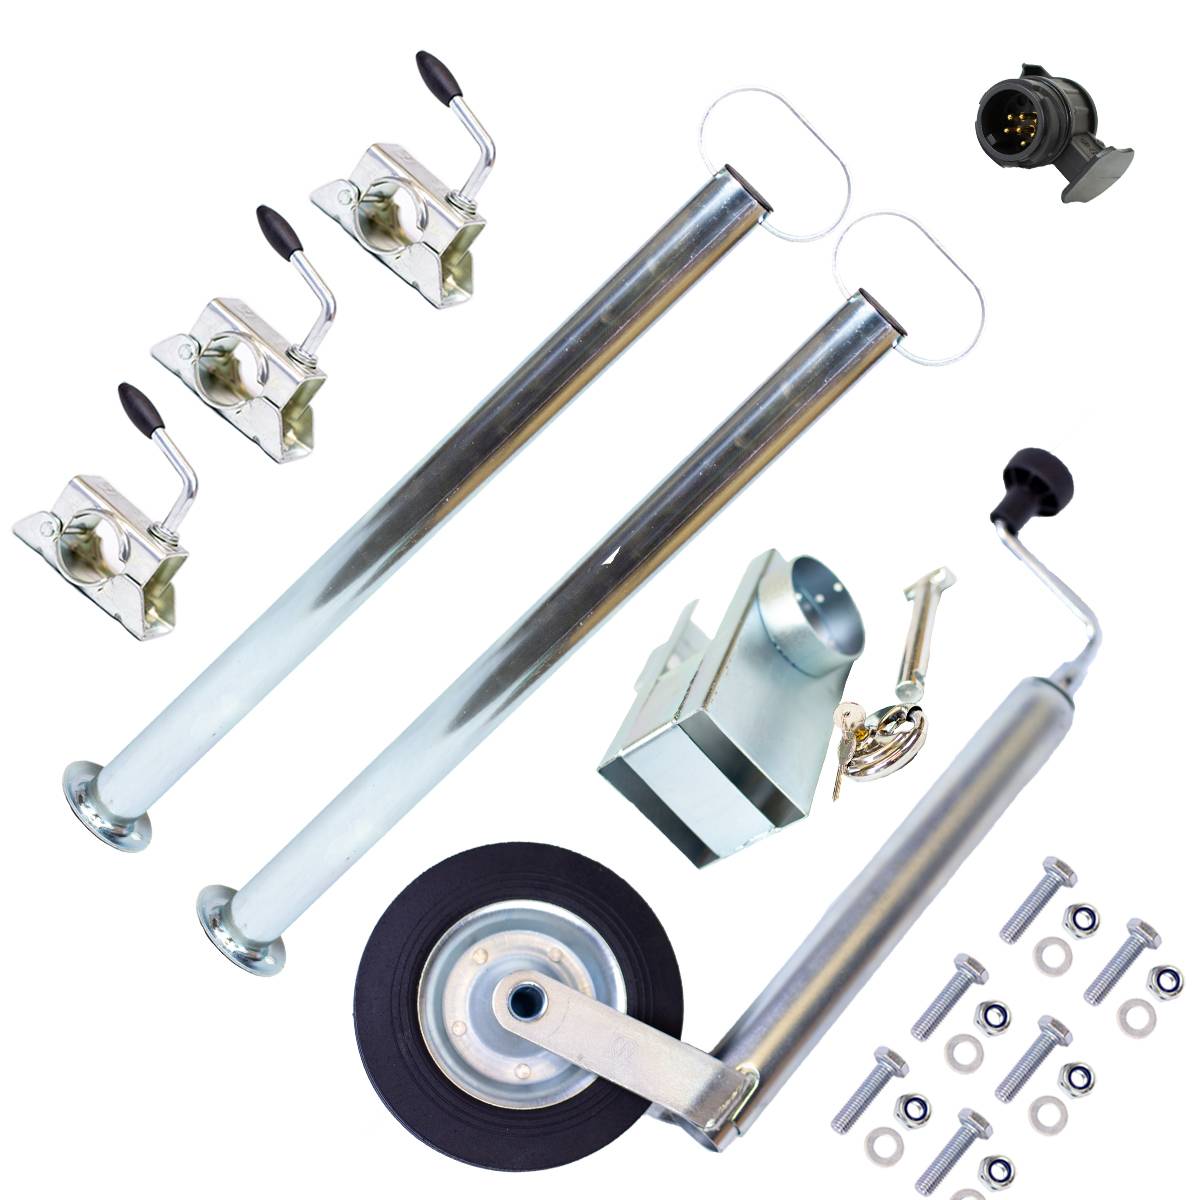 Kit d'accessoires pour remorque de voiture : roue jockey, supports 700 mm,  support de serrage avec matériel de fixation.